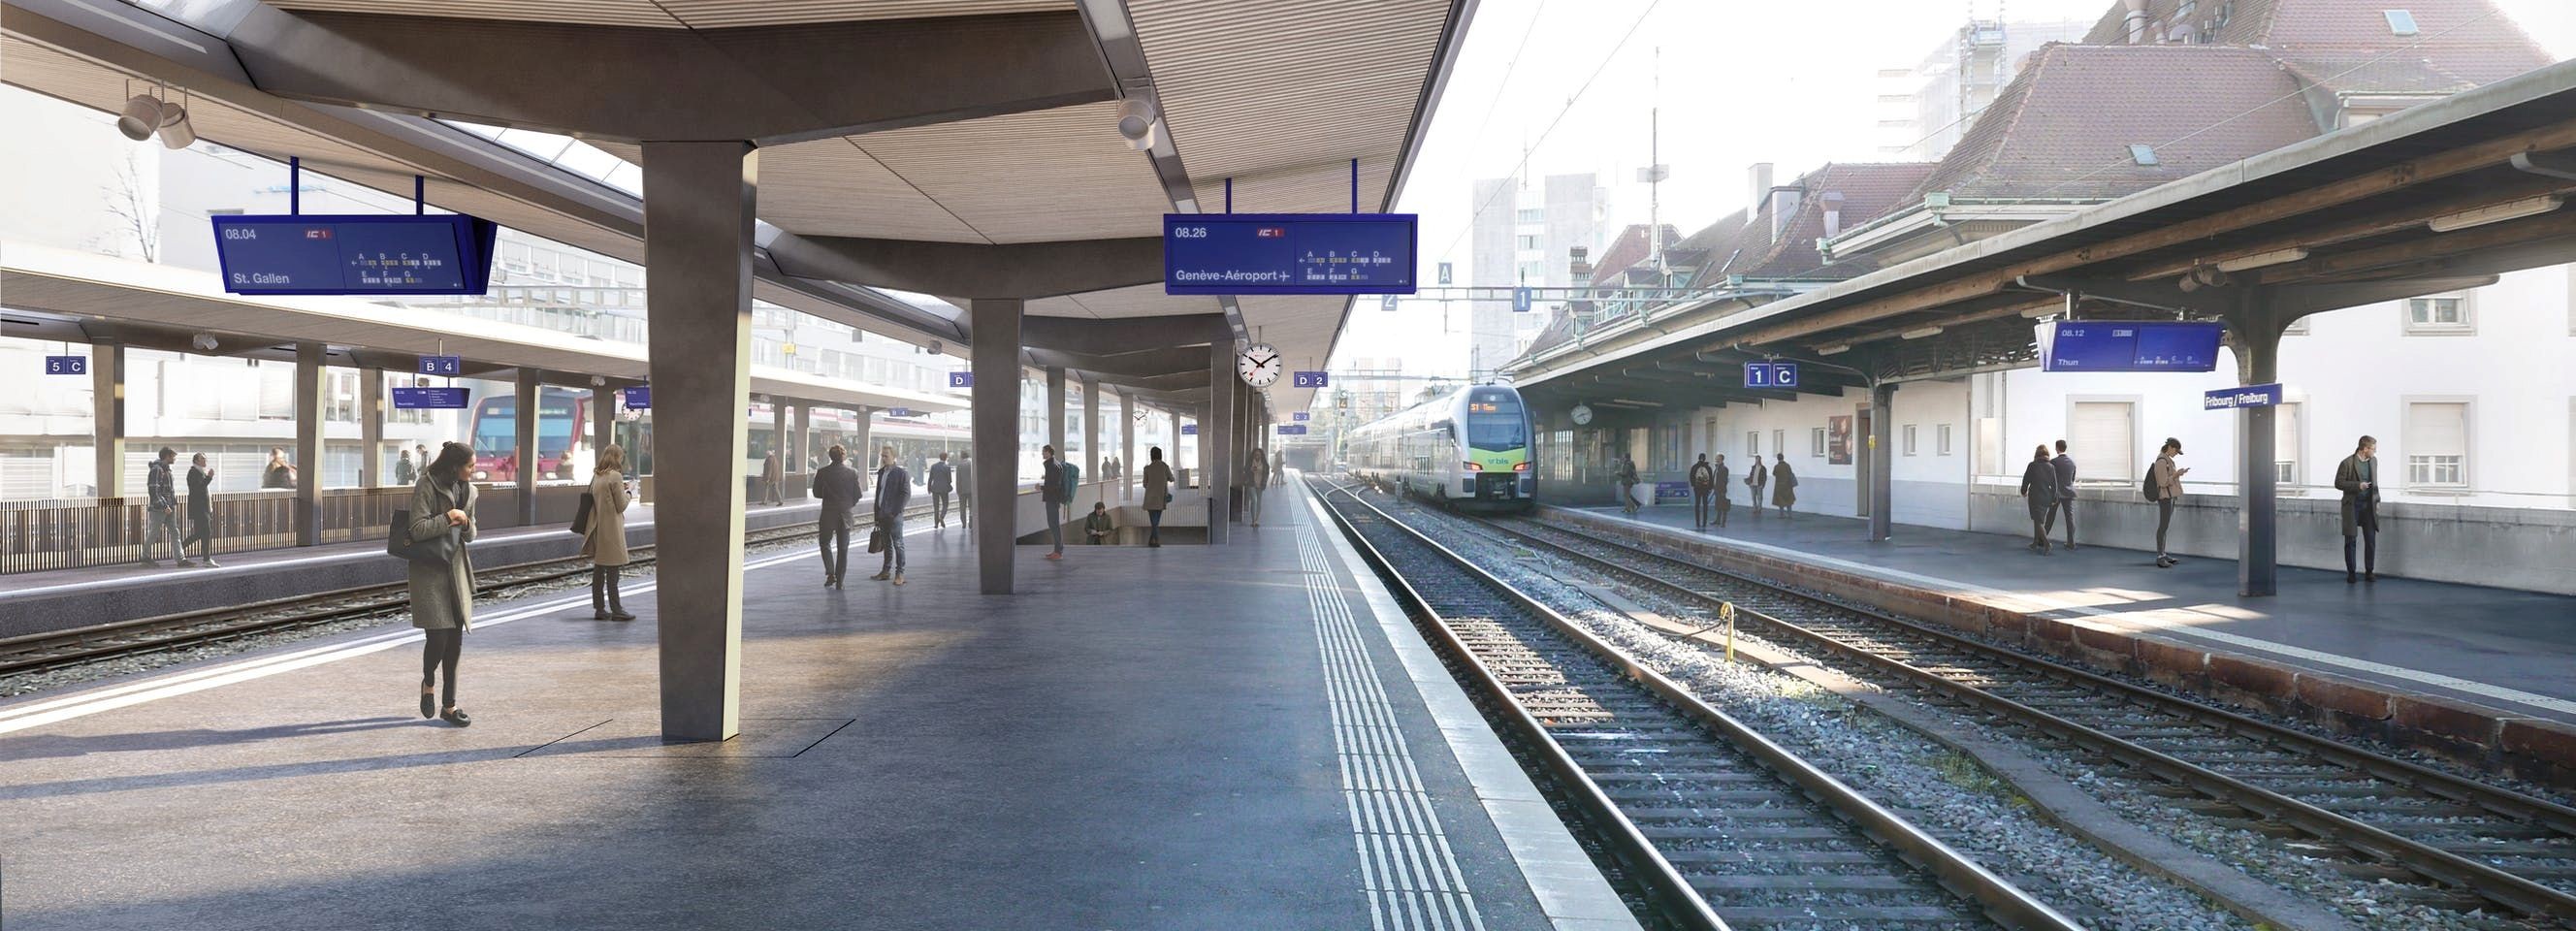 Avec des quais rehaussés, de nouvelles marquises et un deuxième passage sous-voie, la nouvelle gare de Fribourg améliorera dès 2025 le confort de ses usagers.